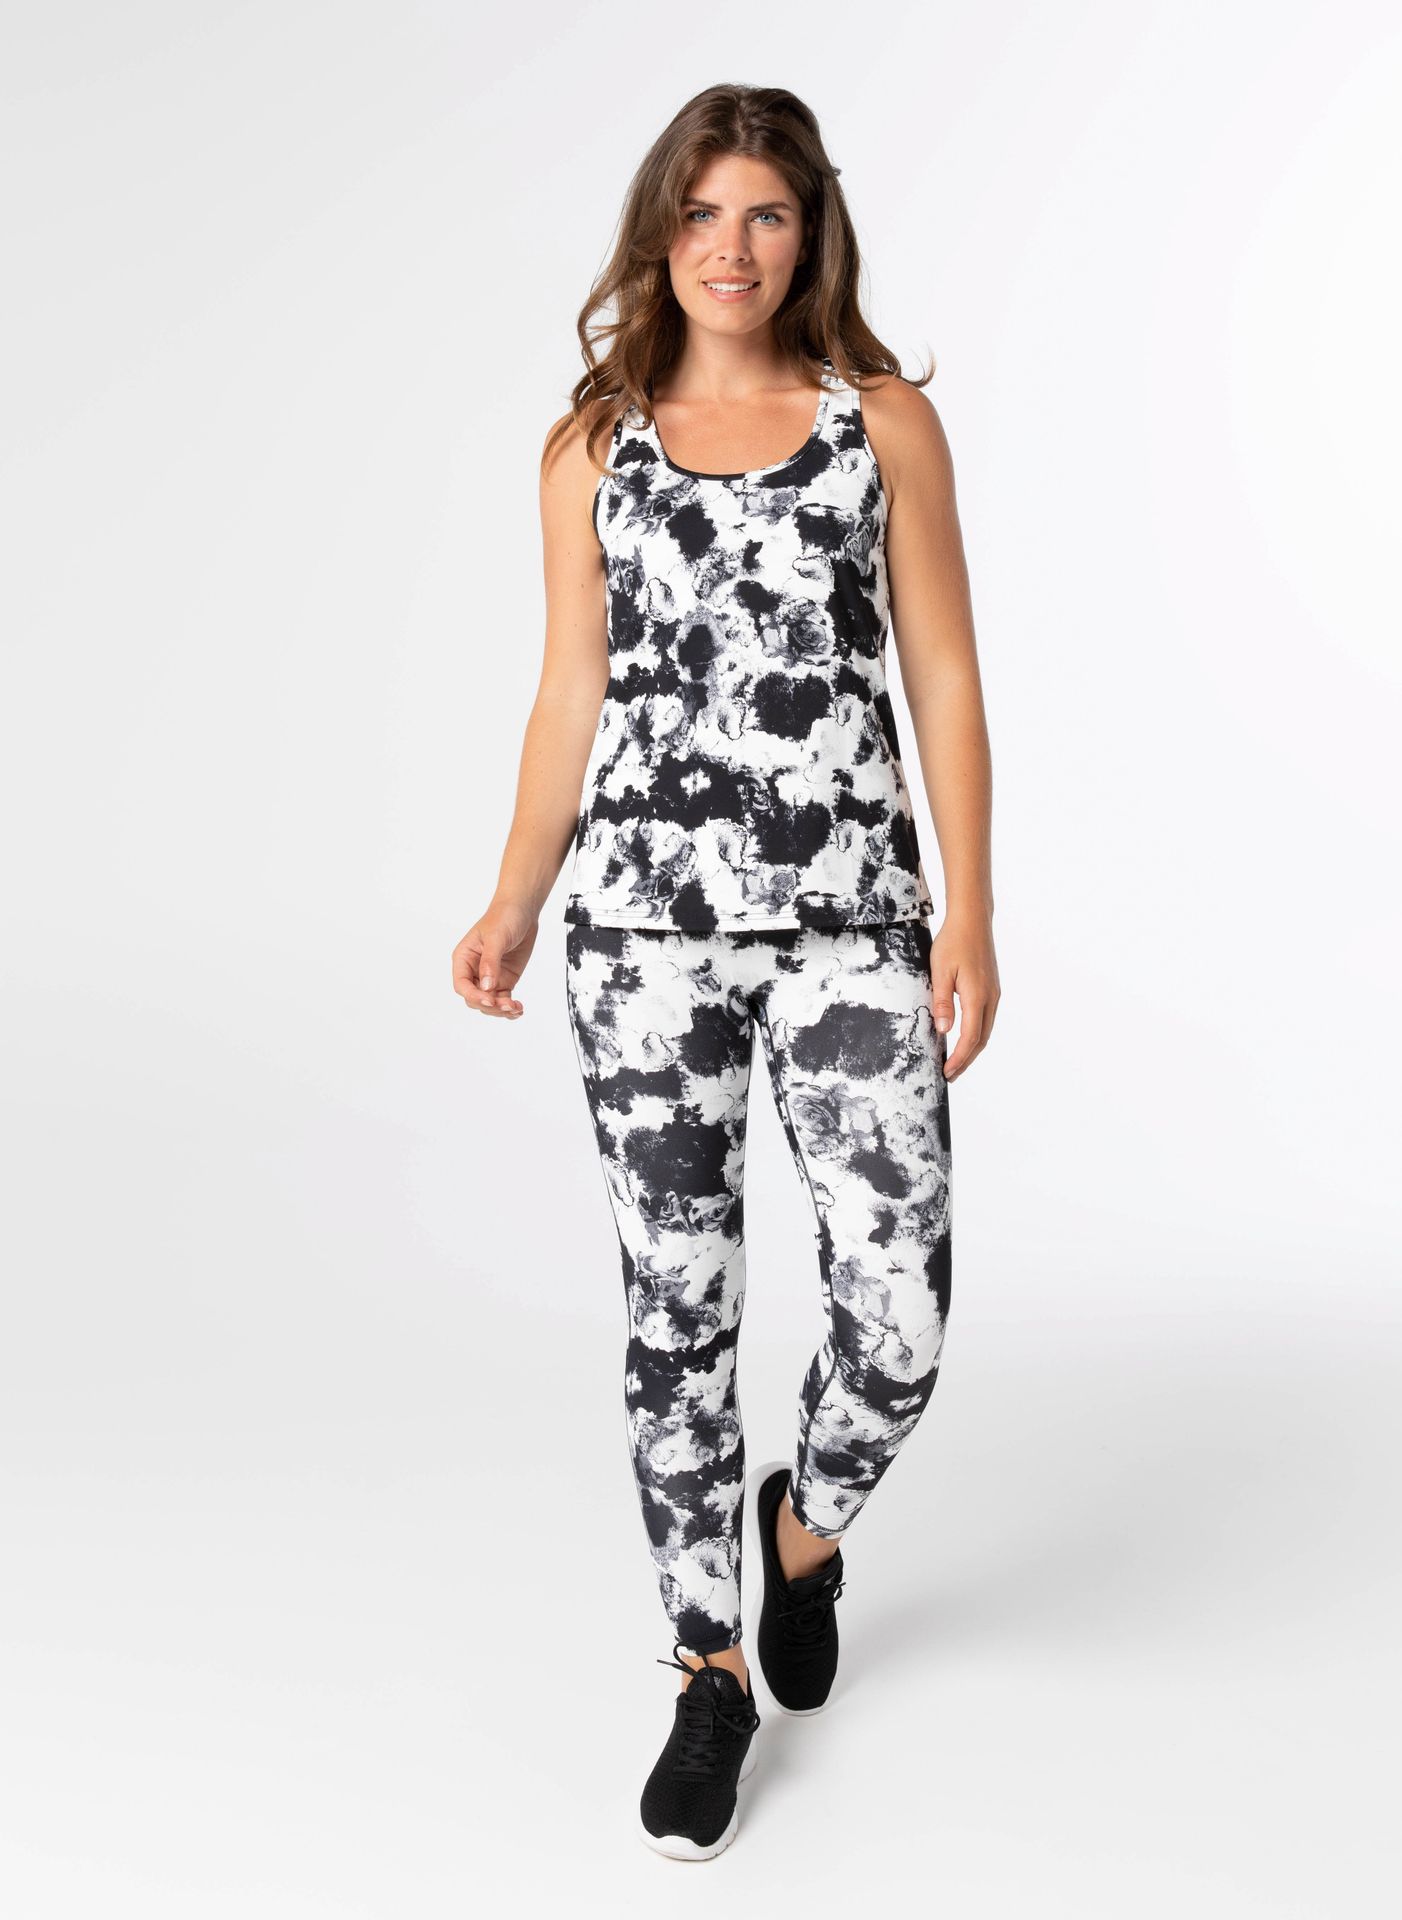 Norah Top - Activewear black/white 211806-031